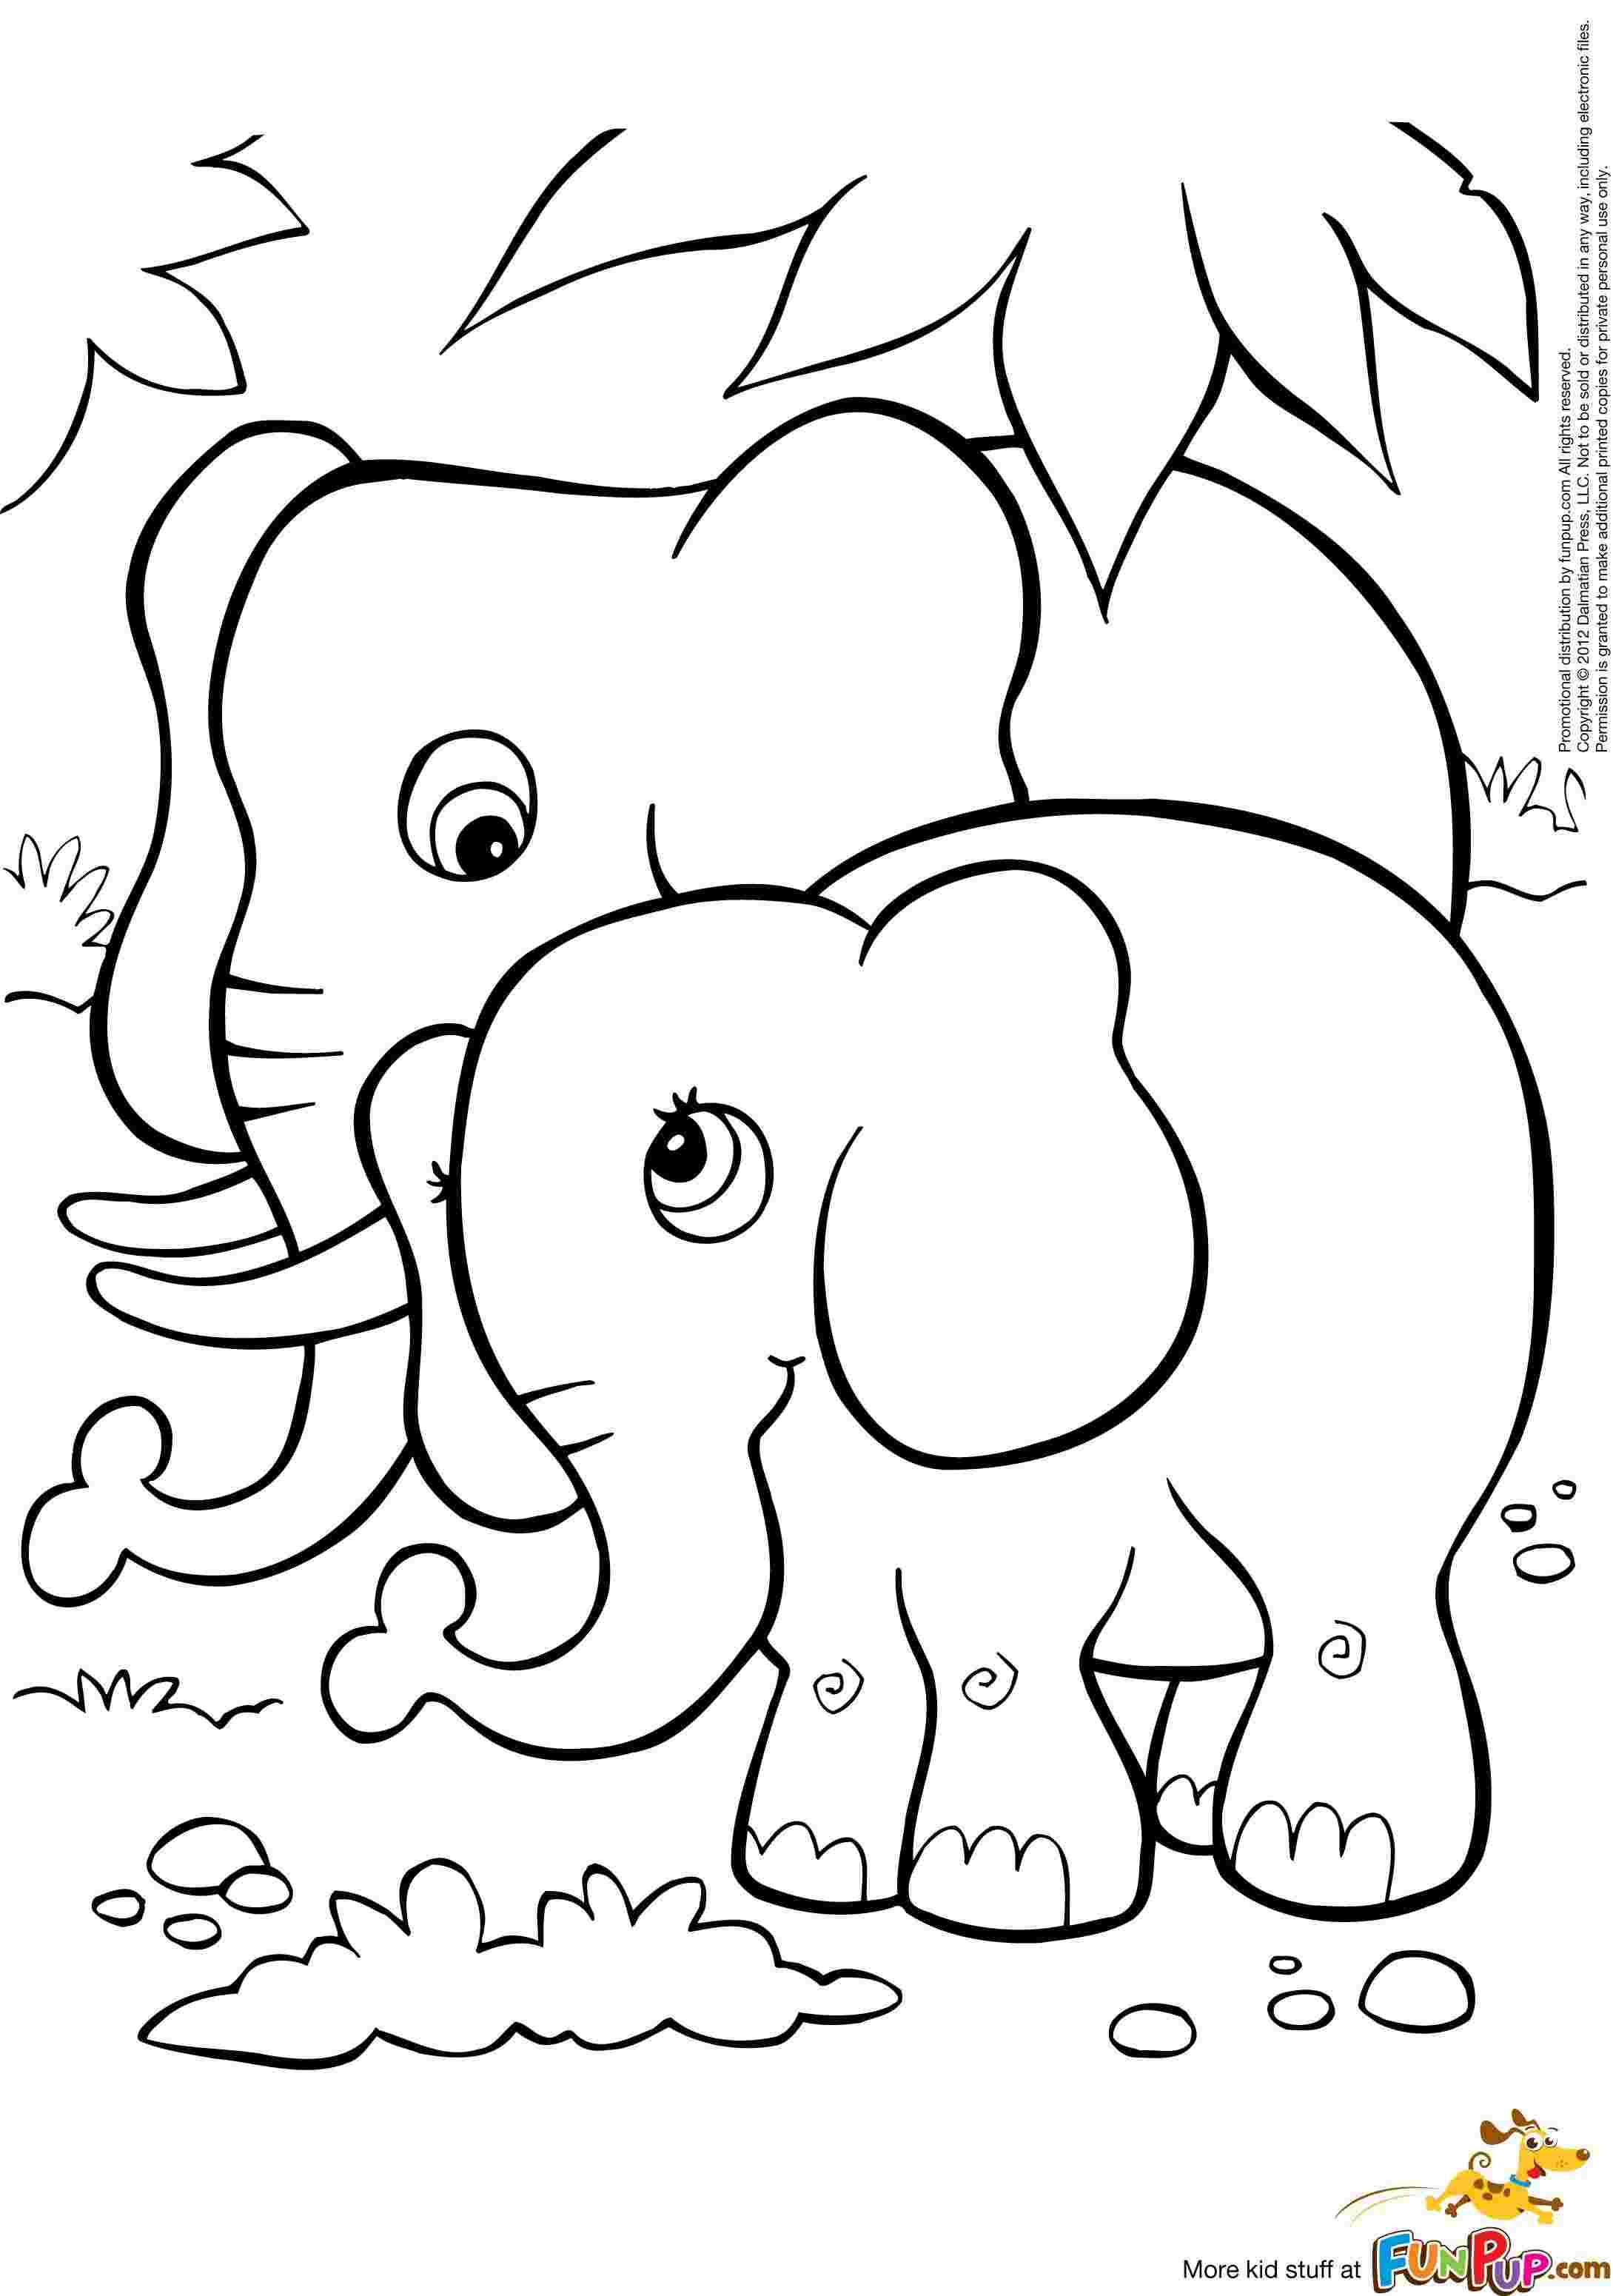 Tranh tô màu voi to và voi nhỏ đứng cạnh nhau